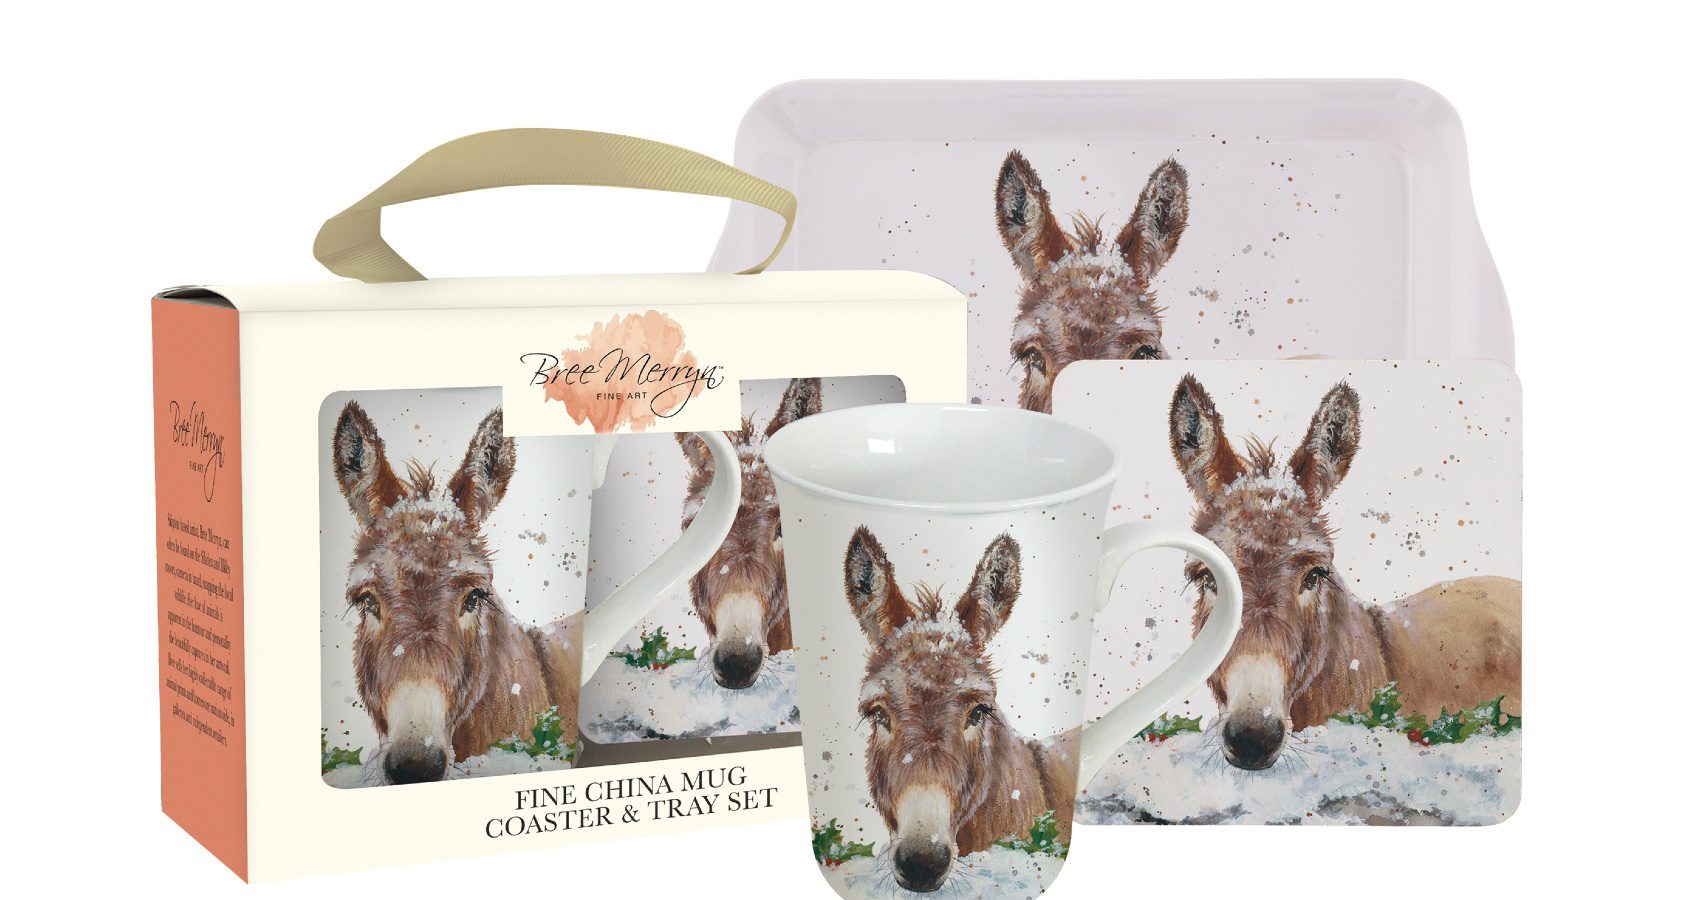 Donkey Teatime Gift Set containing a tray, coaster and mug